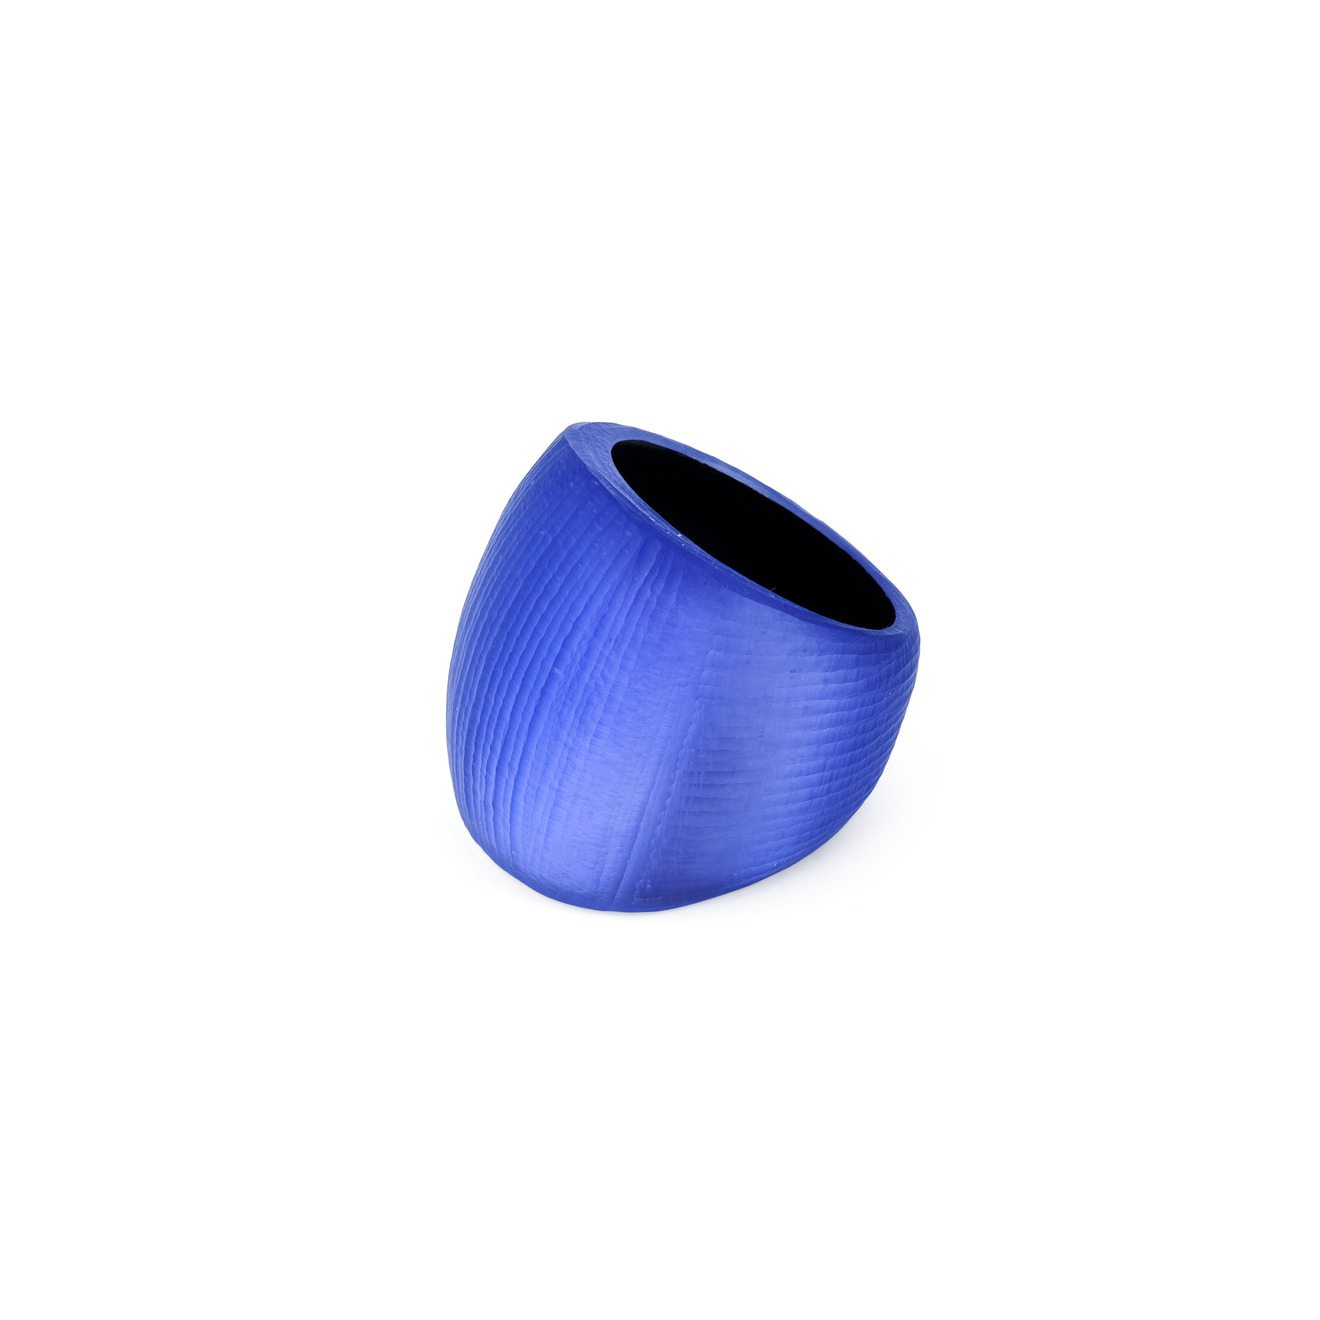 Alexis Bittar Объемное фиолетовое кольцо из люцита